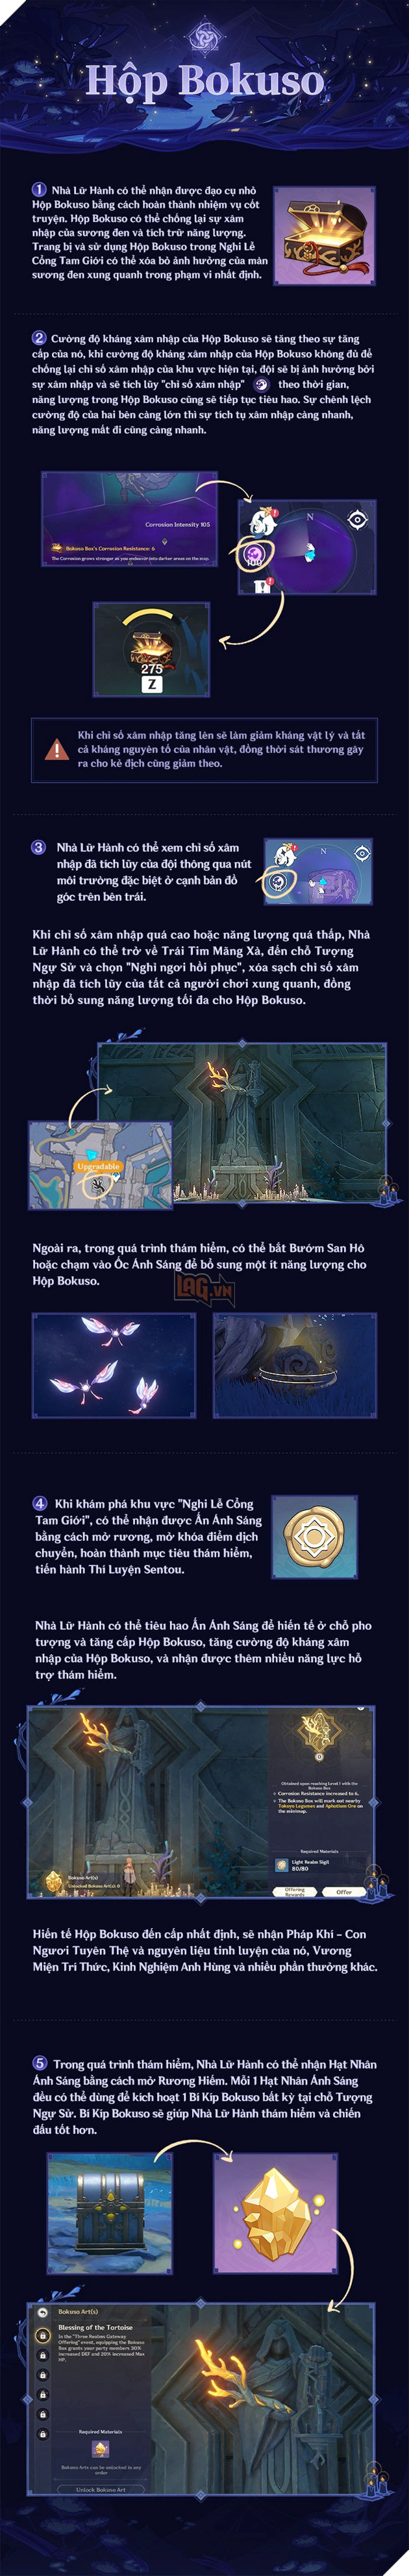 Gensin Impact: Hướng dẫn sự kiện cho Nghi thức Cổng Tam giới ra mắt trong phiên bản 2.5 6